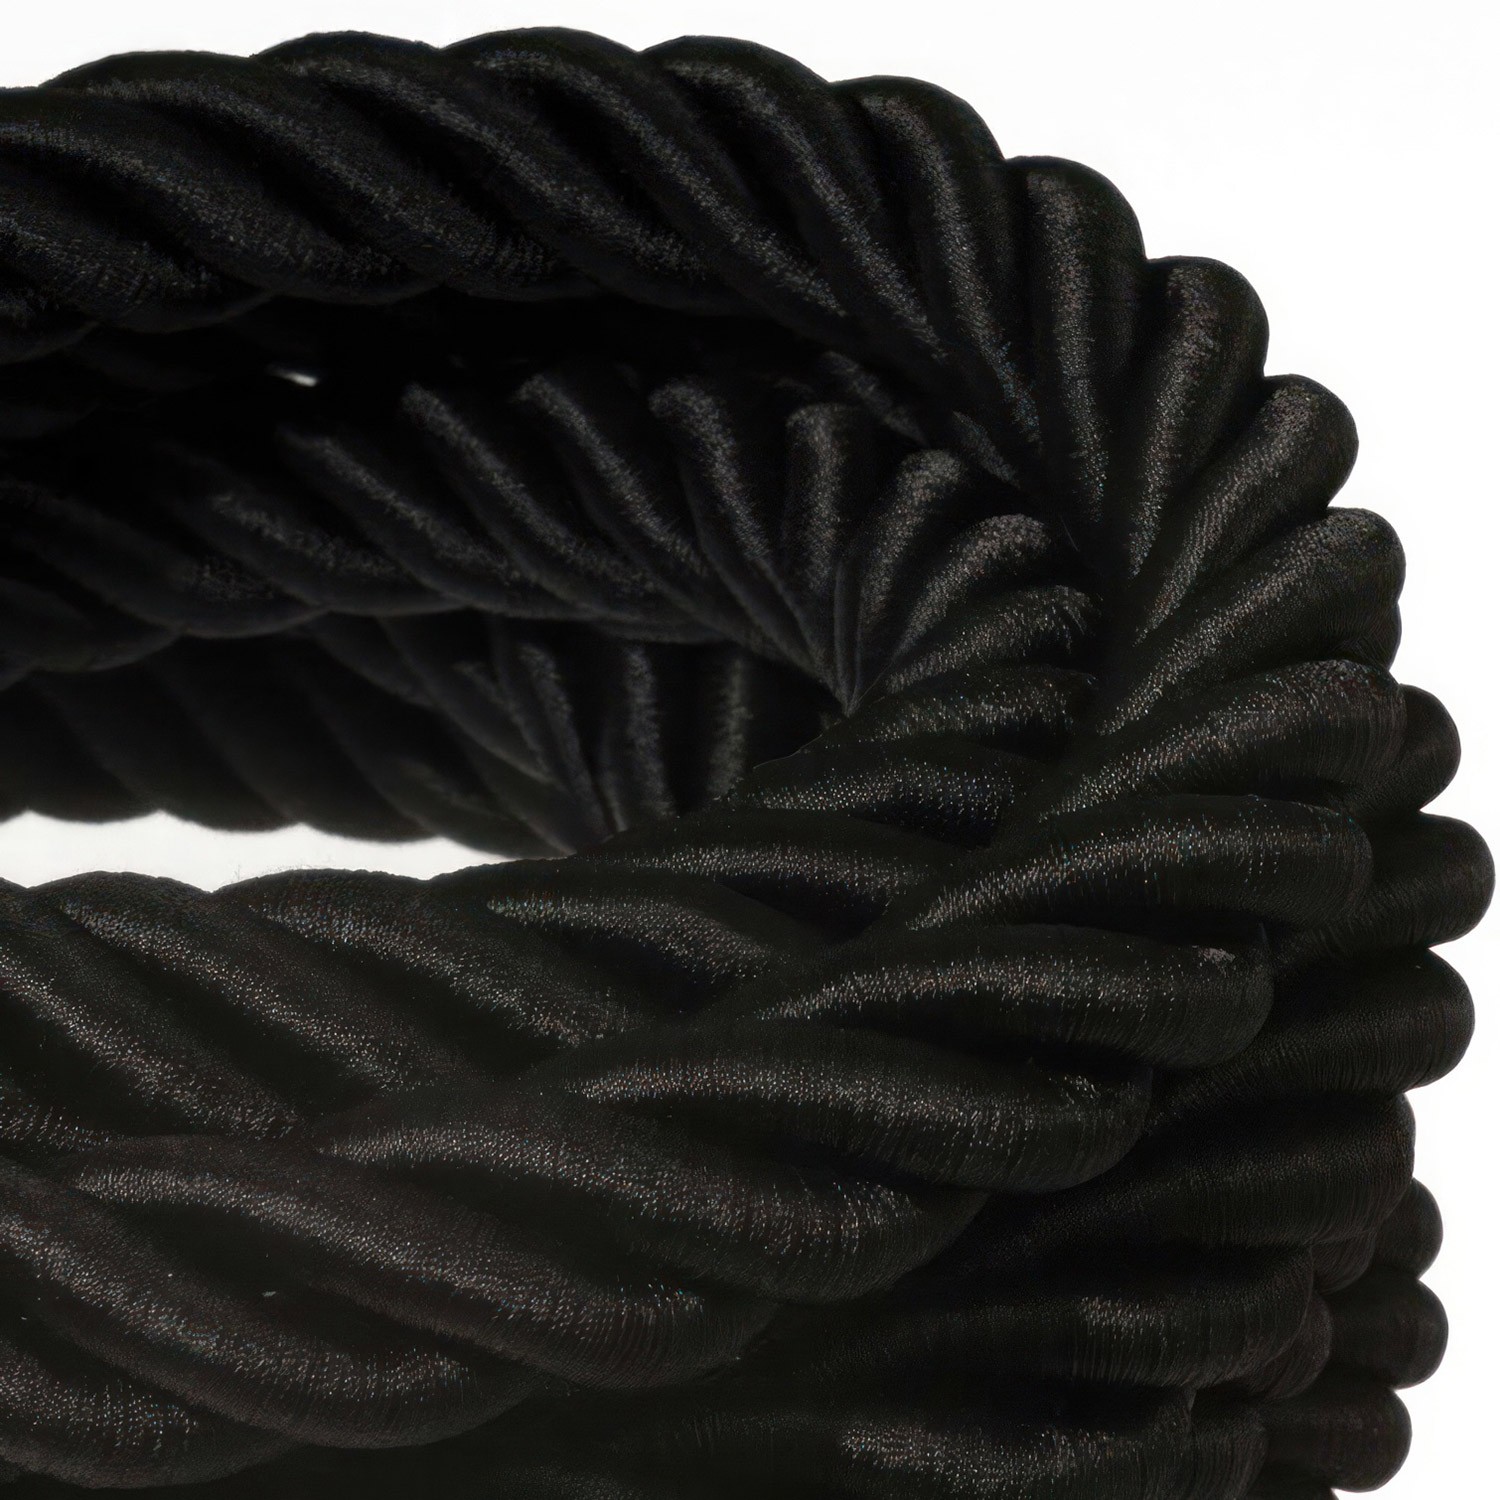 3XL električna vrv, električen kabel 3x0,75, prekrit s črnim svetlečim blagom. Premer 30mm.